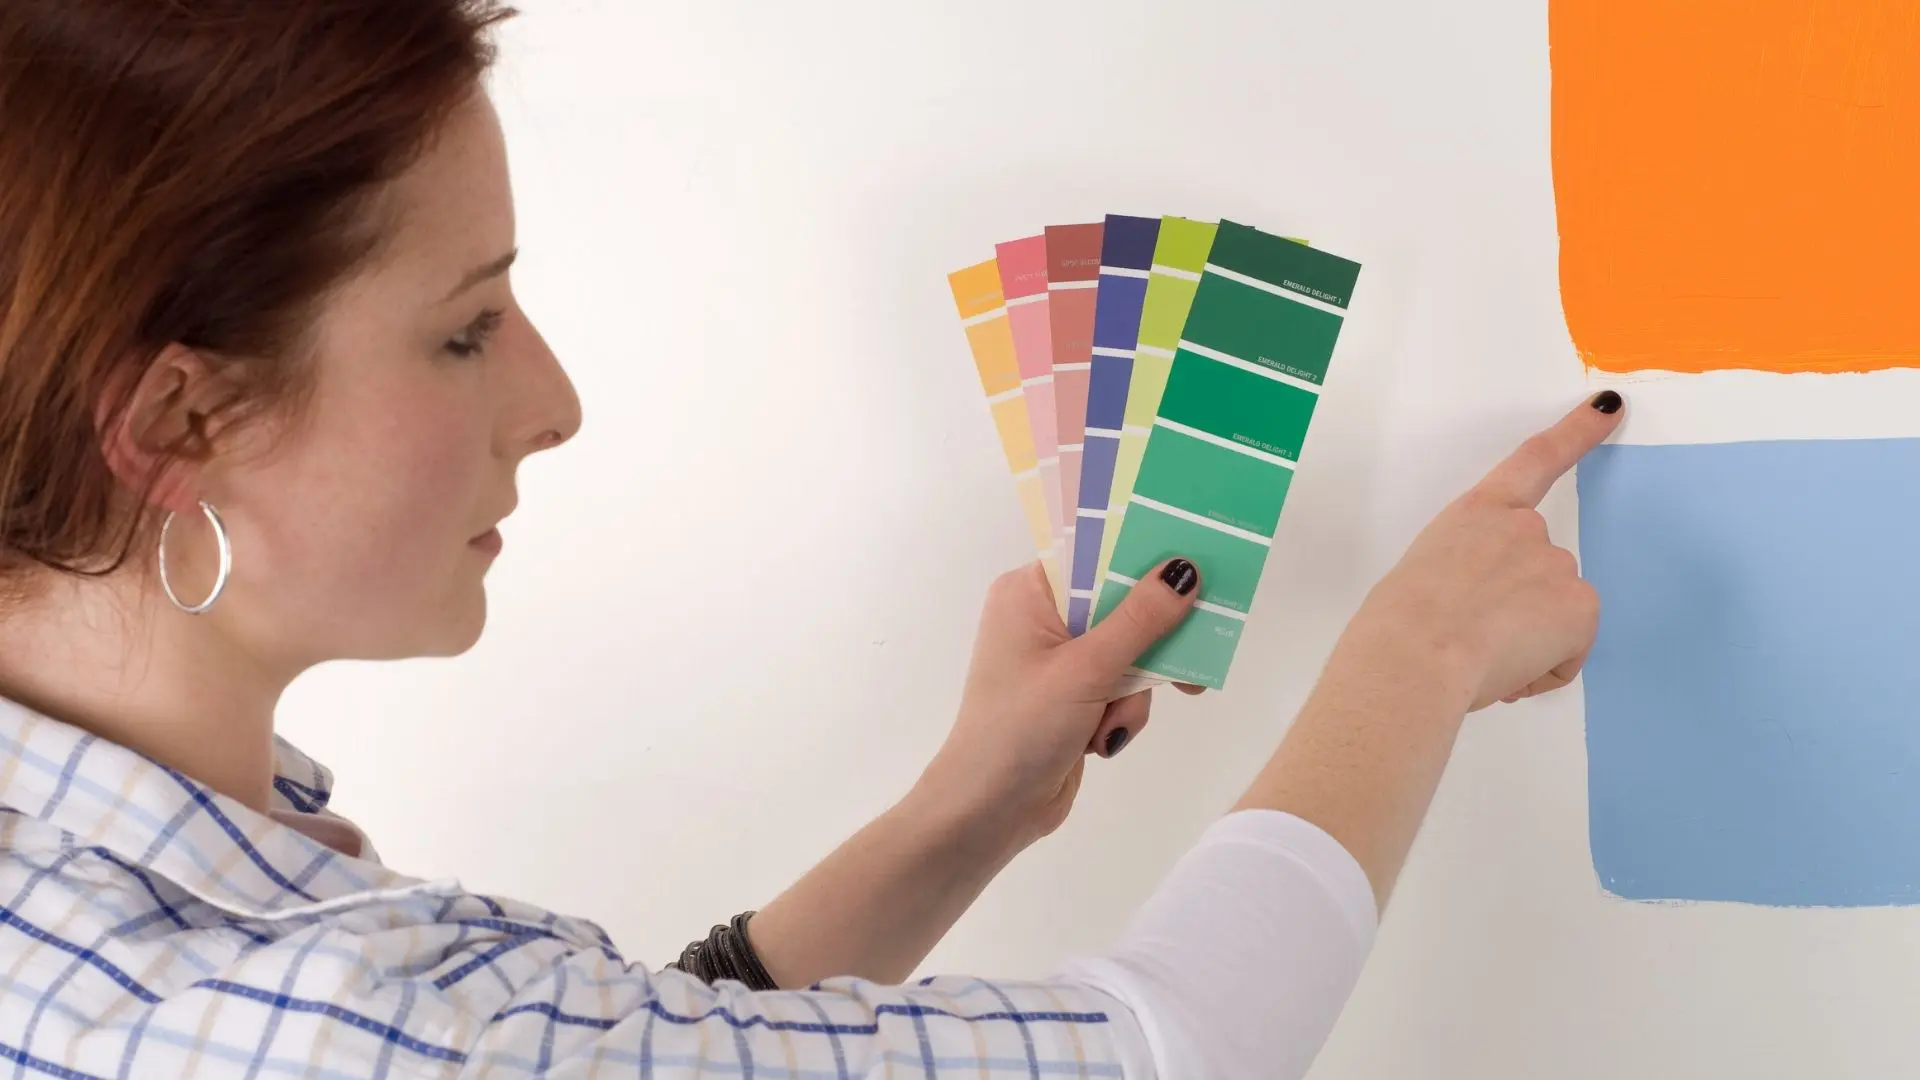 Cómo pintar de colores pastel tus paredes (sin ser cursi)